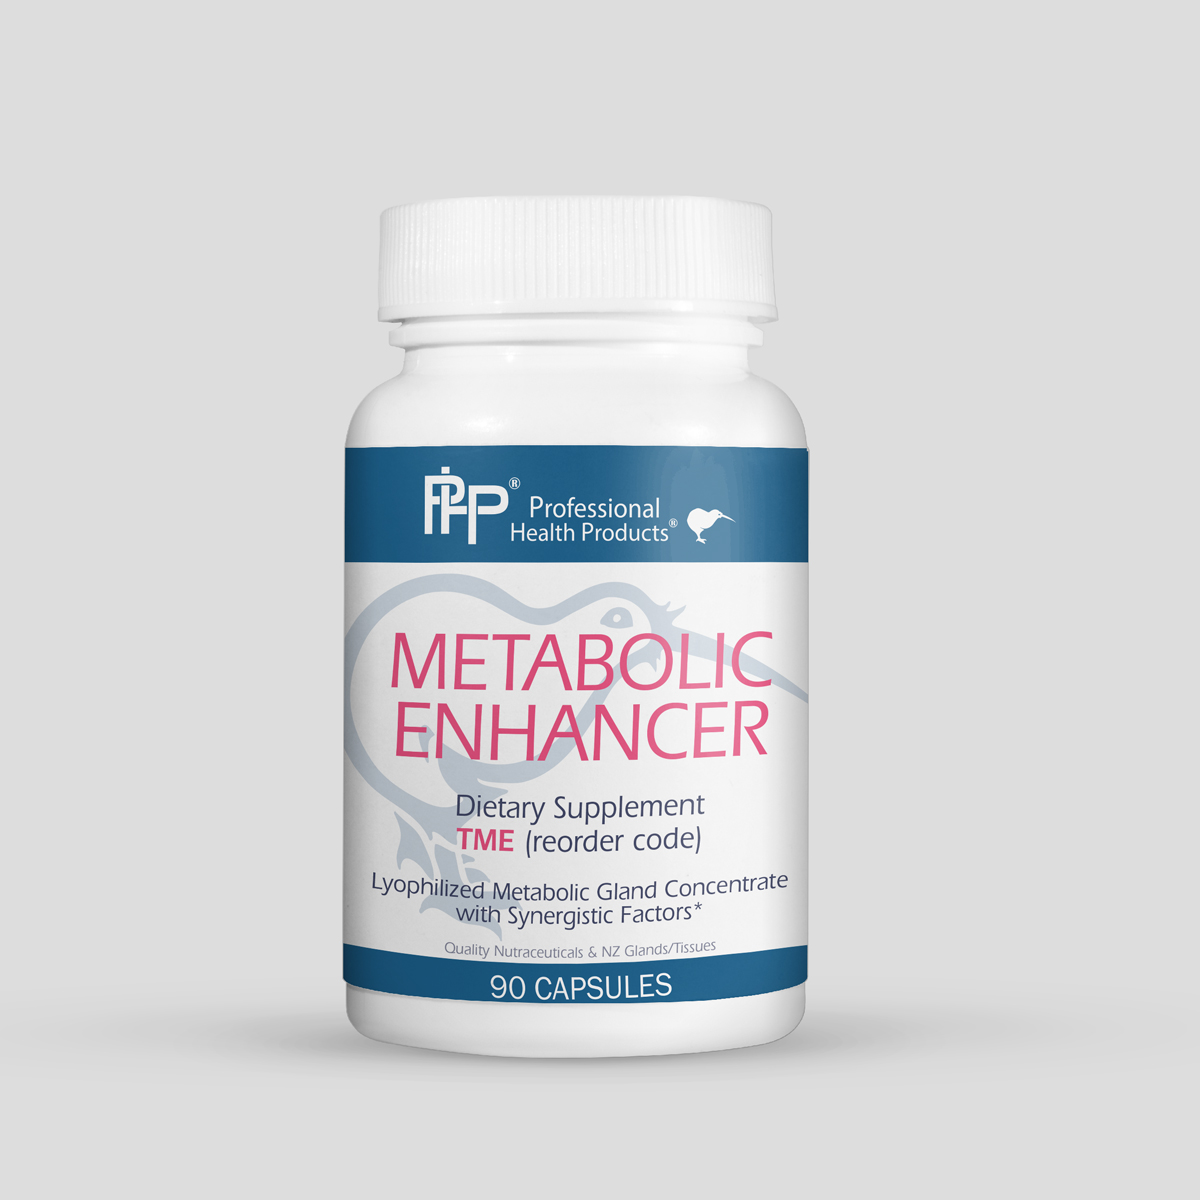 Natural metabolic enhancers